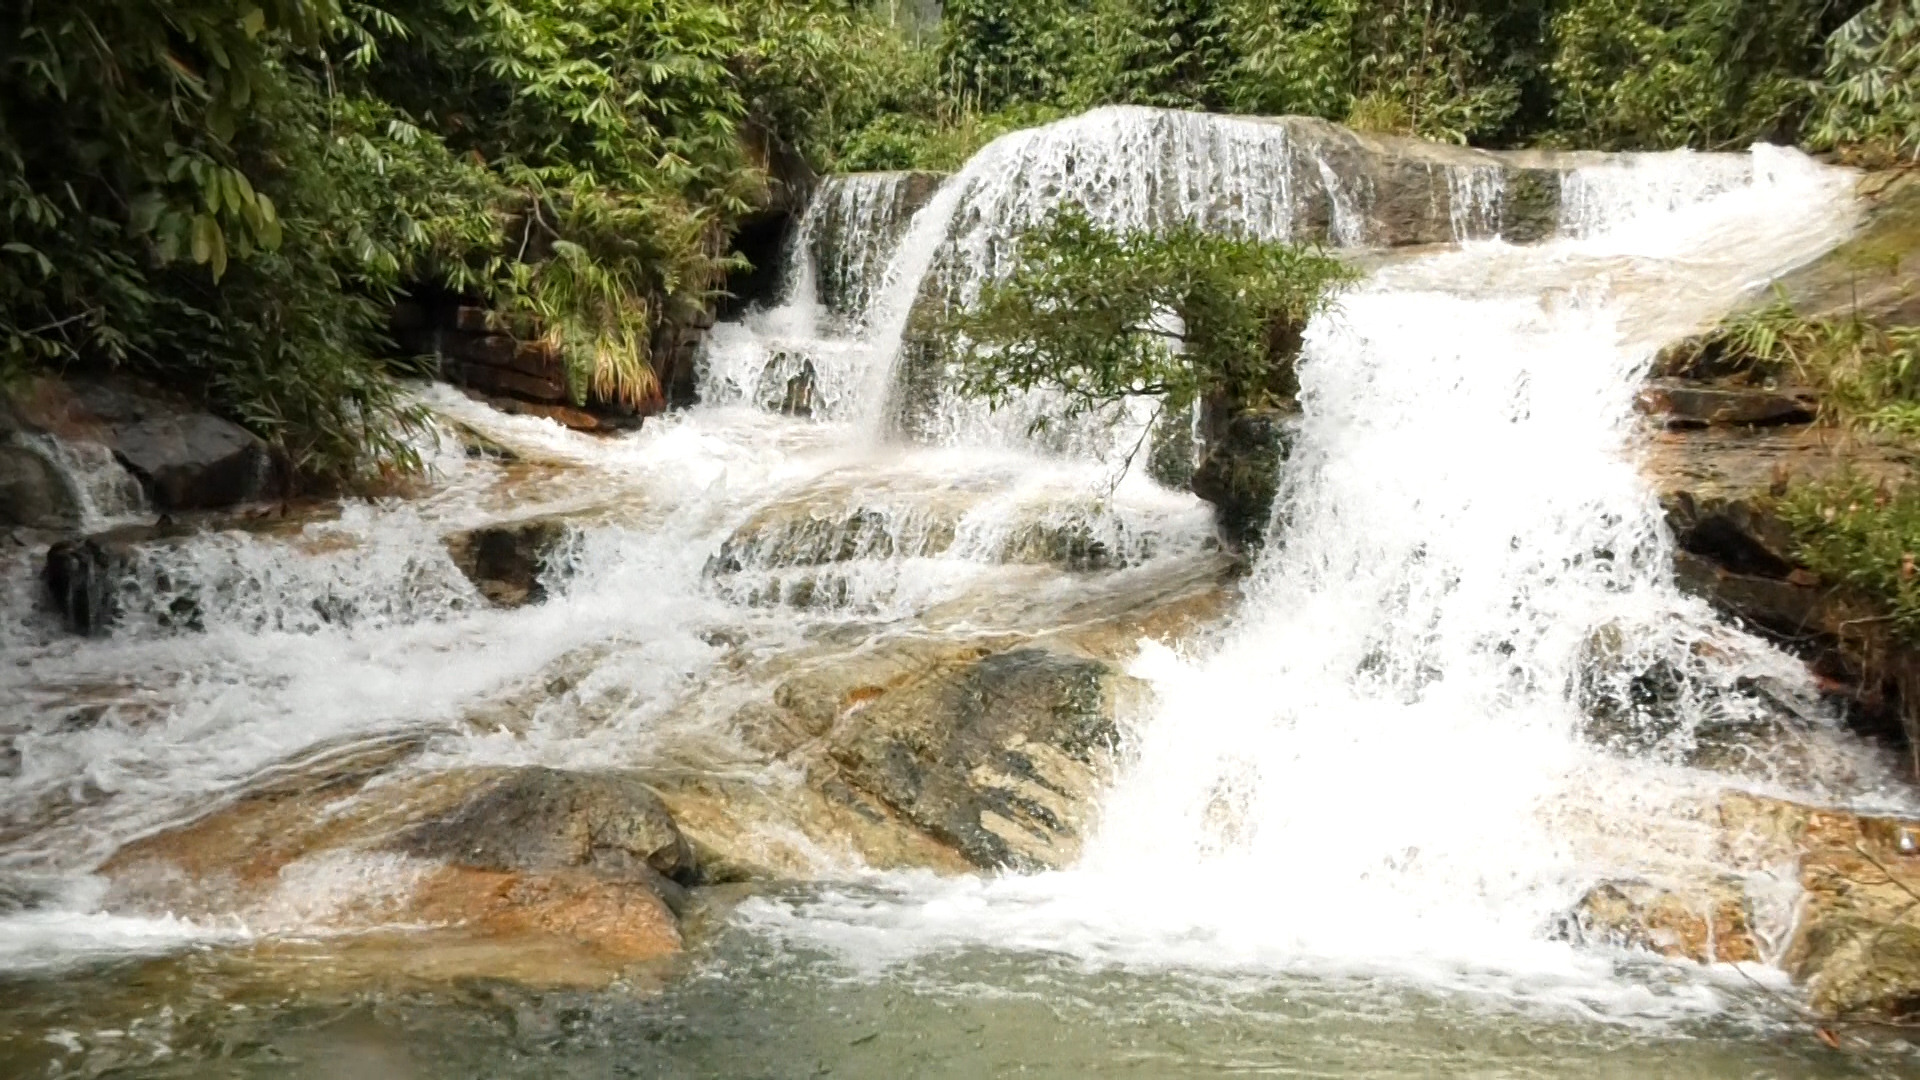 Đây là thác nước đẹp như phim ở Thanh Hóa, có lan rừng thơm, dưới suối vô số cá, tôm lạ mắt- Ảnh 5.